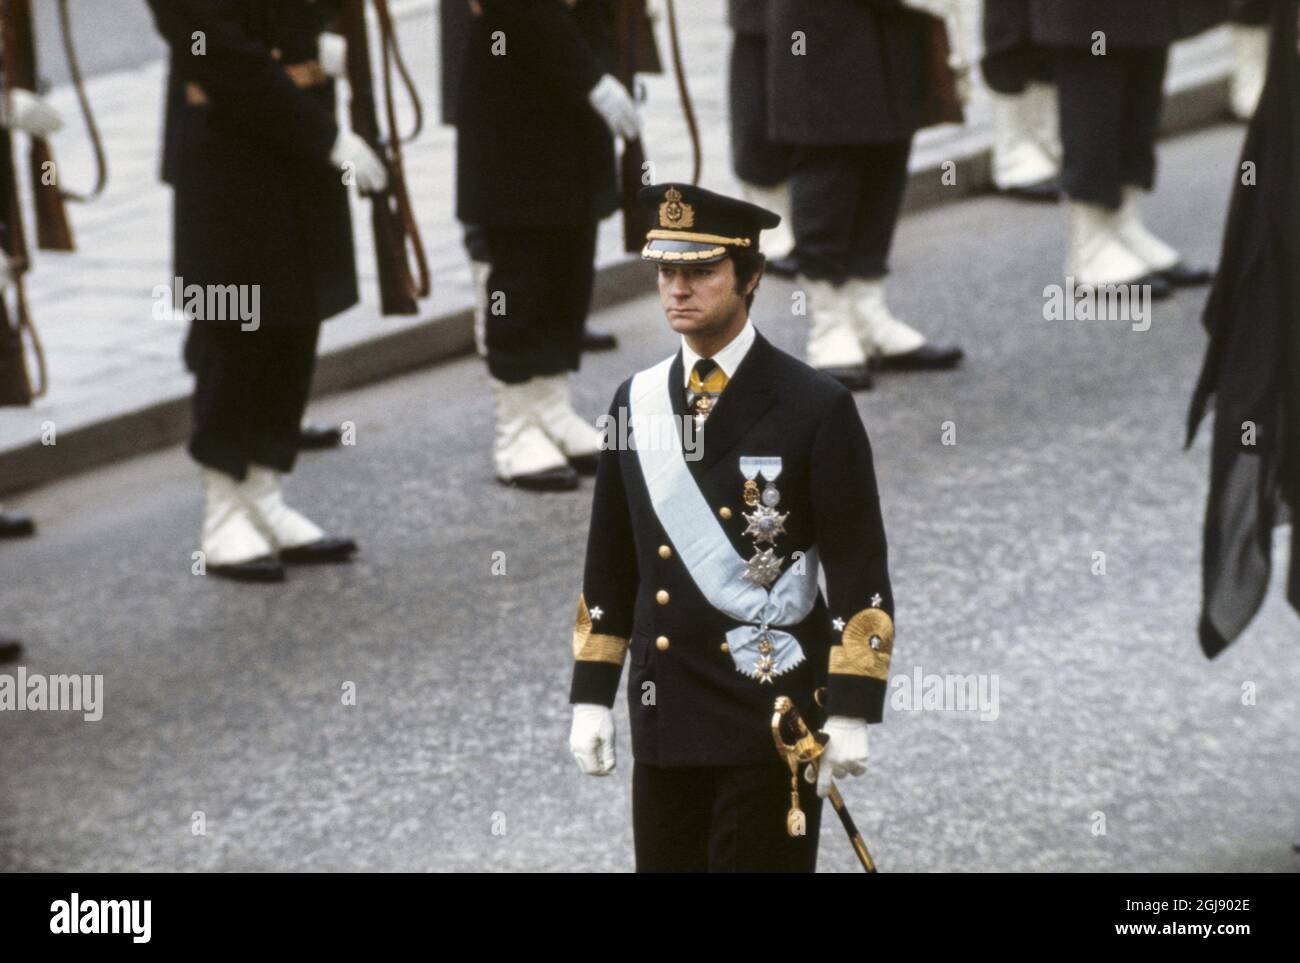 ARKIV STOCKHOLM 1972-12-07. Kronprinz Carl Gustaf wird während der Beerdigung von Prinzessin Sibylla in Stockholm, Schweden, am 7. Dezember 1972 gesehen Foto: SVT Bild / Kod: 5600 Stockfoto